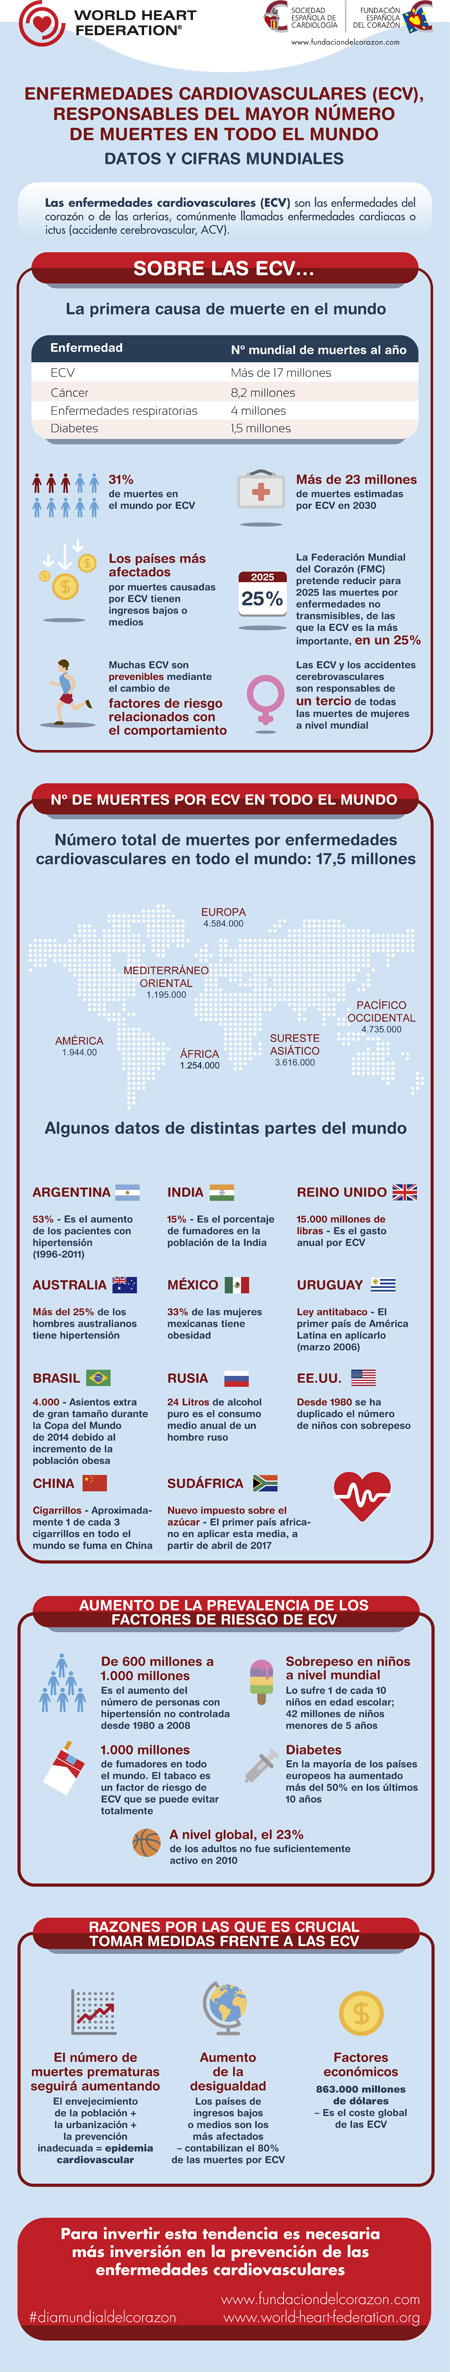 Infografia FEC Dia Mundial2016 (FEC-105)